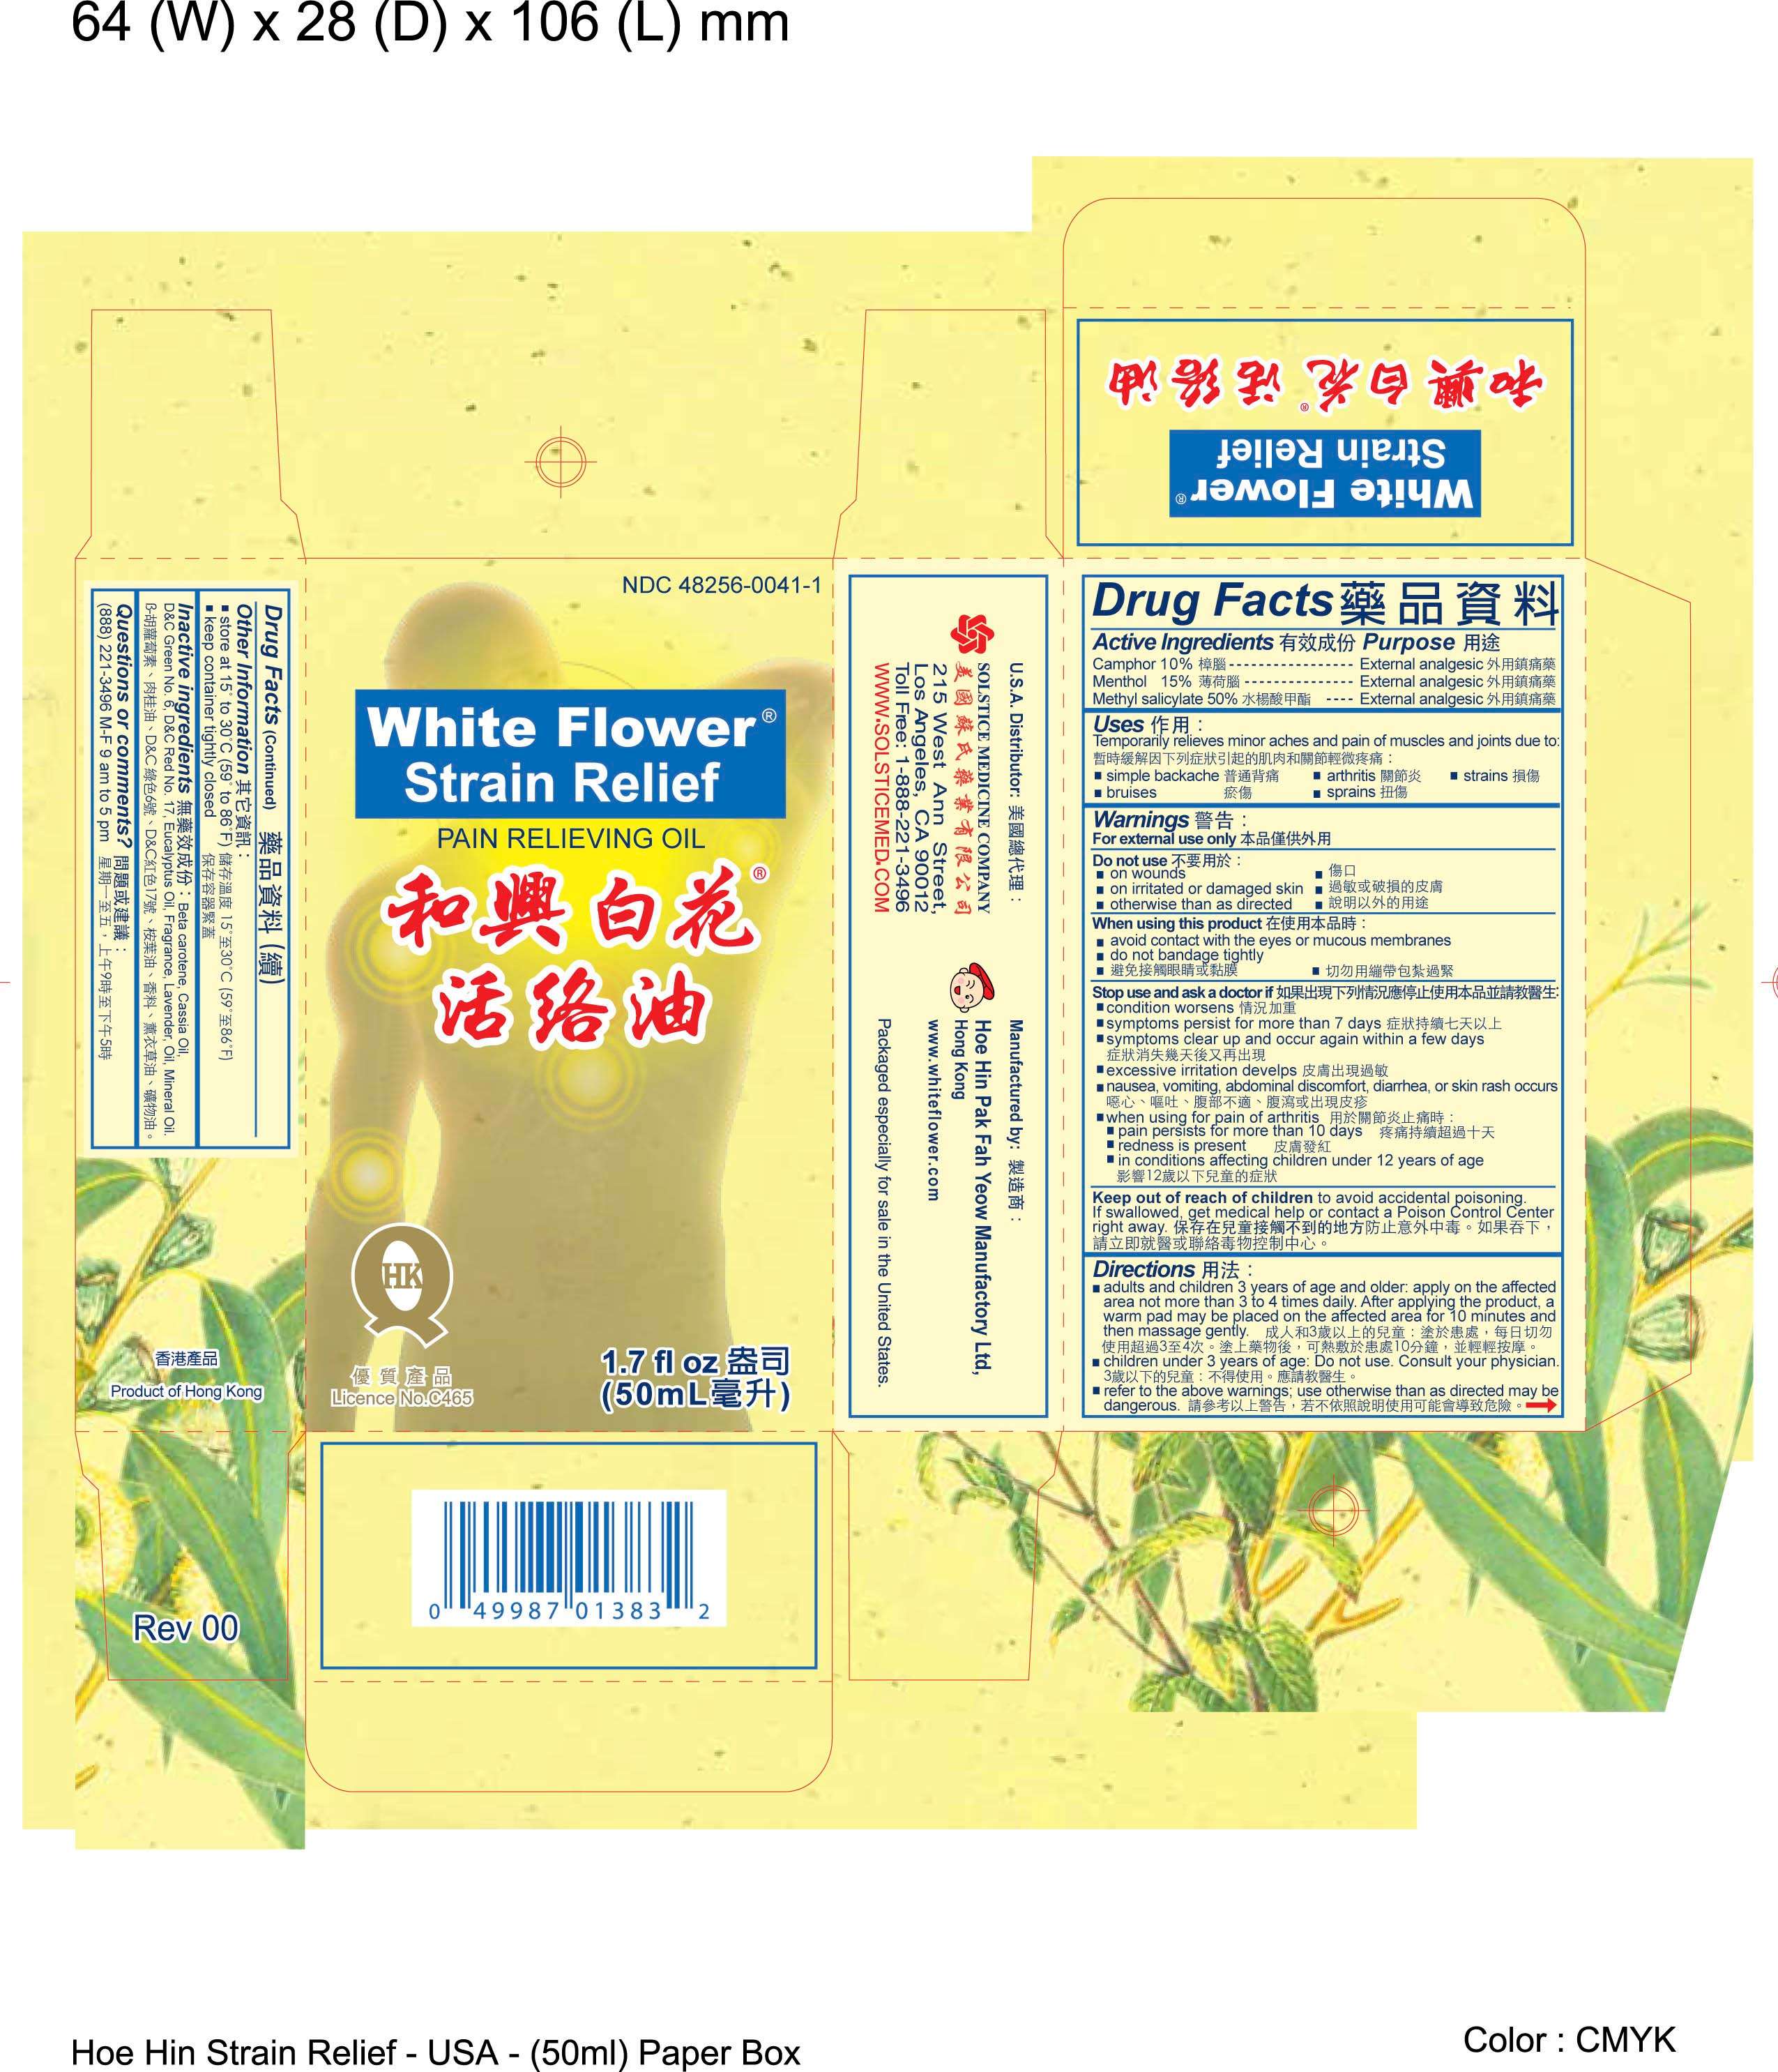 WHITE FLOWER STRAIN RELIEF